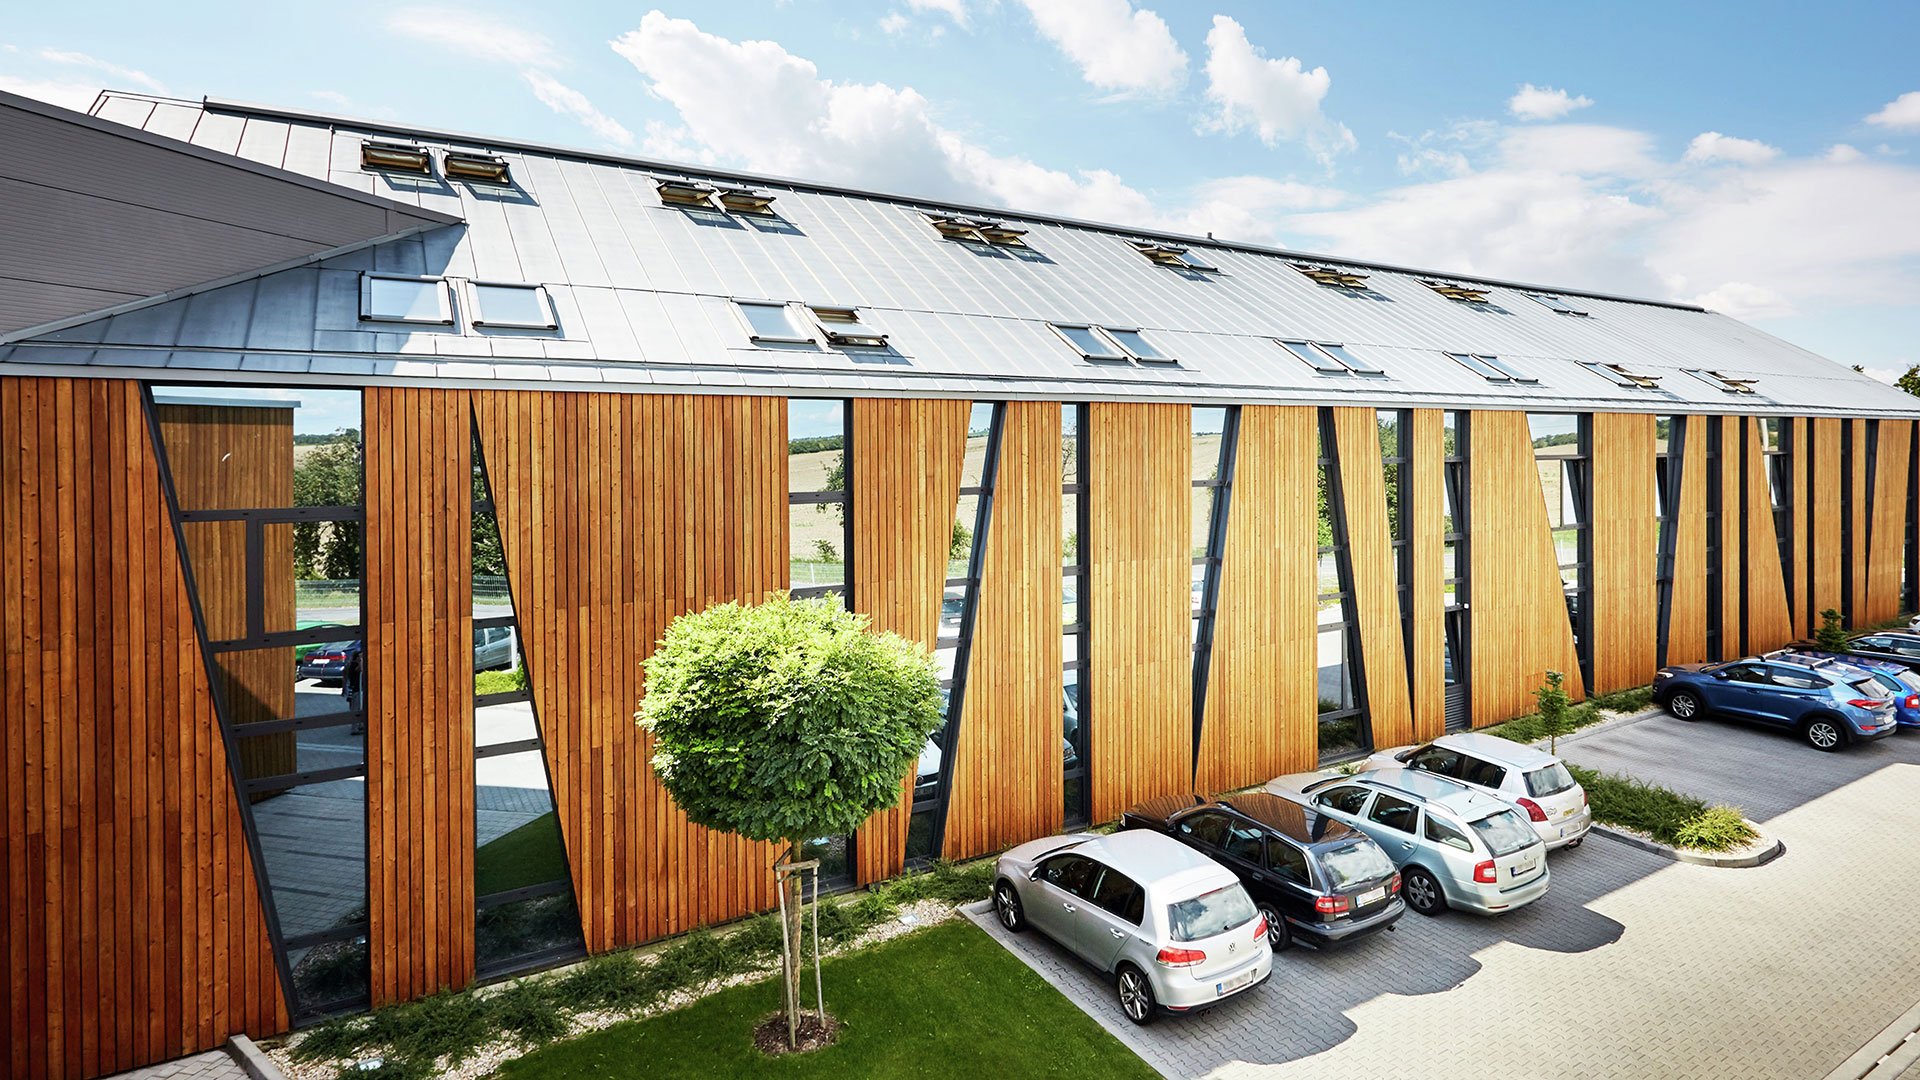 Finestre per tetti ad alta efficienza energetica